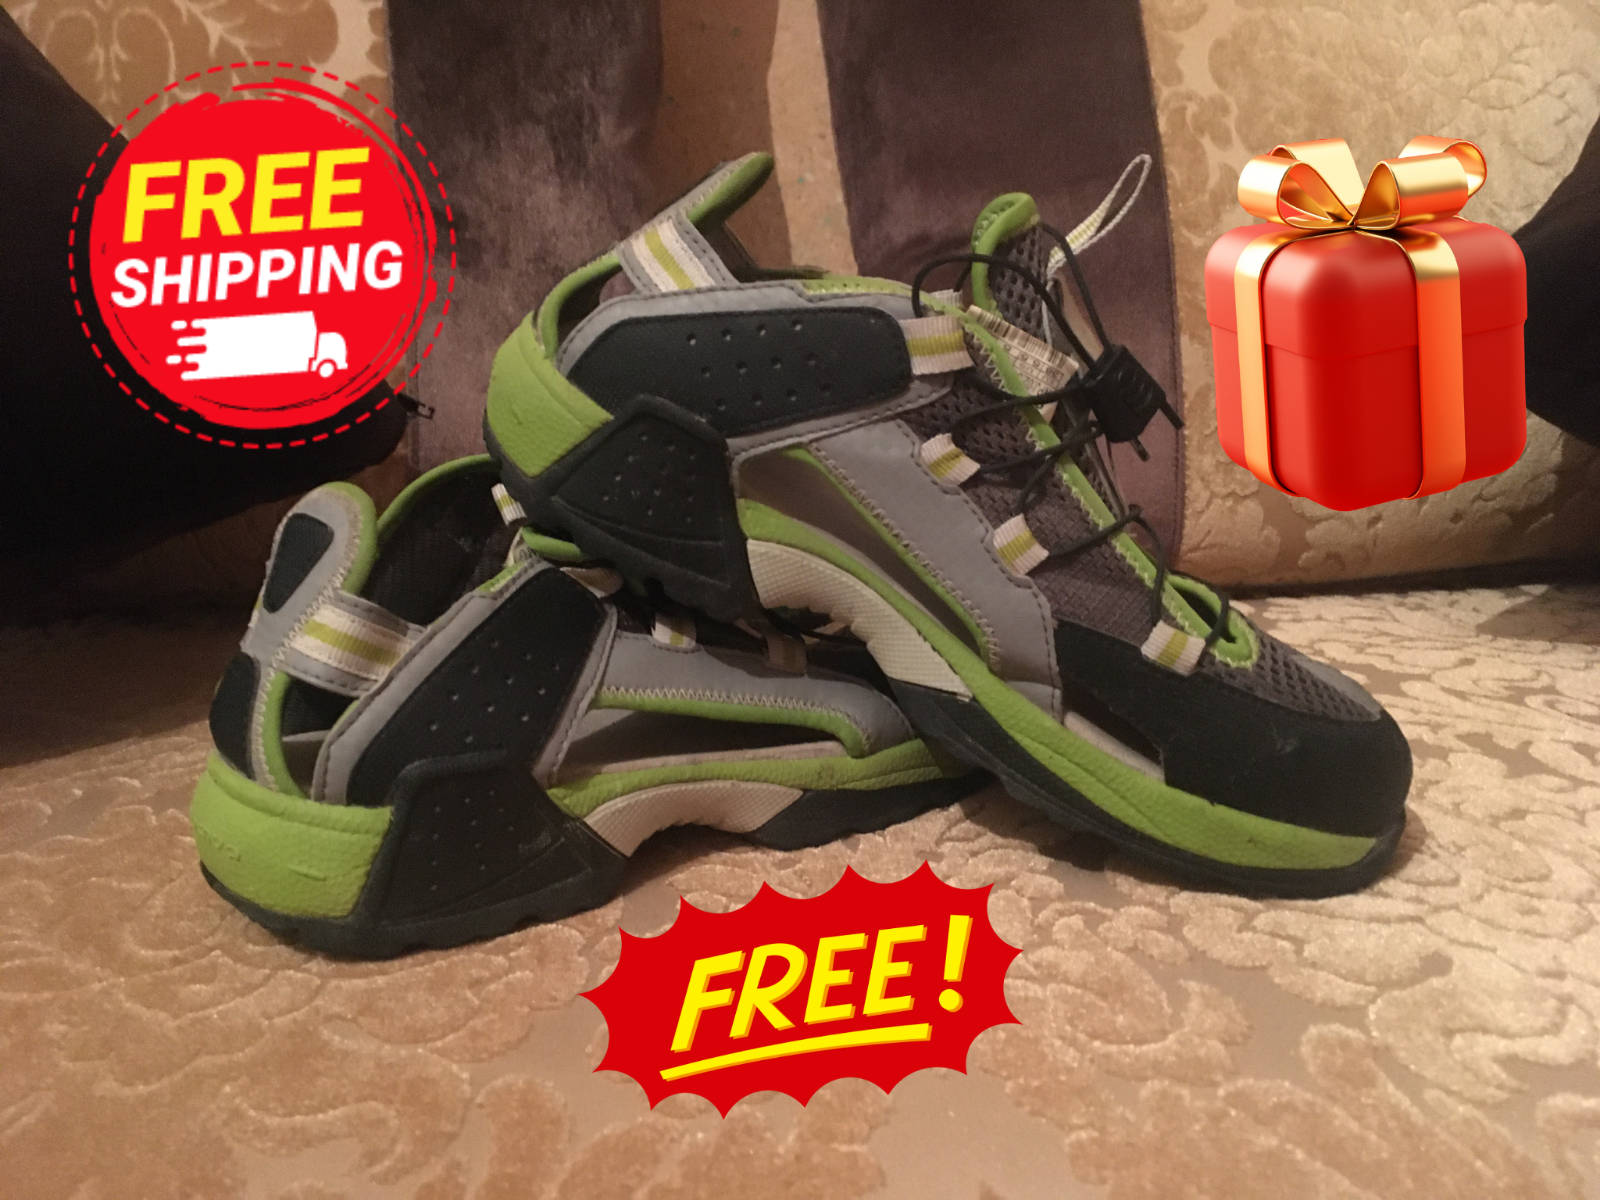 Kammer opskrift fjende Quechua Decathlon Arpenaz Sandal 700 JR Green 09 Oxylane Shoe Size 5.5US +  Gift | eBay